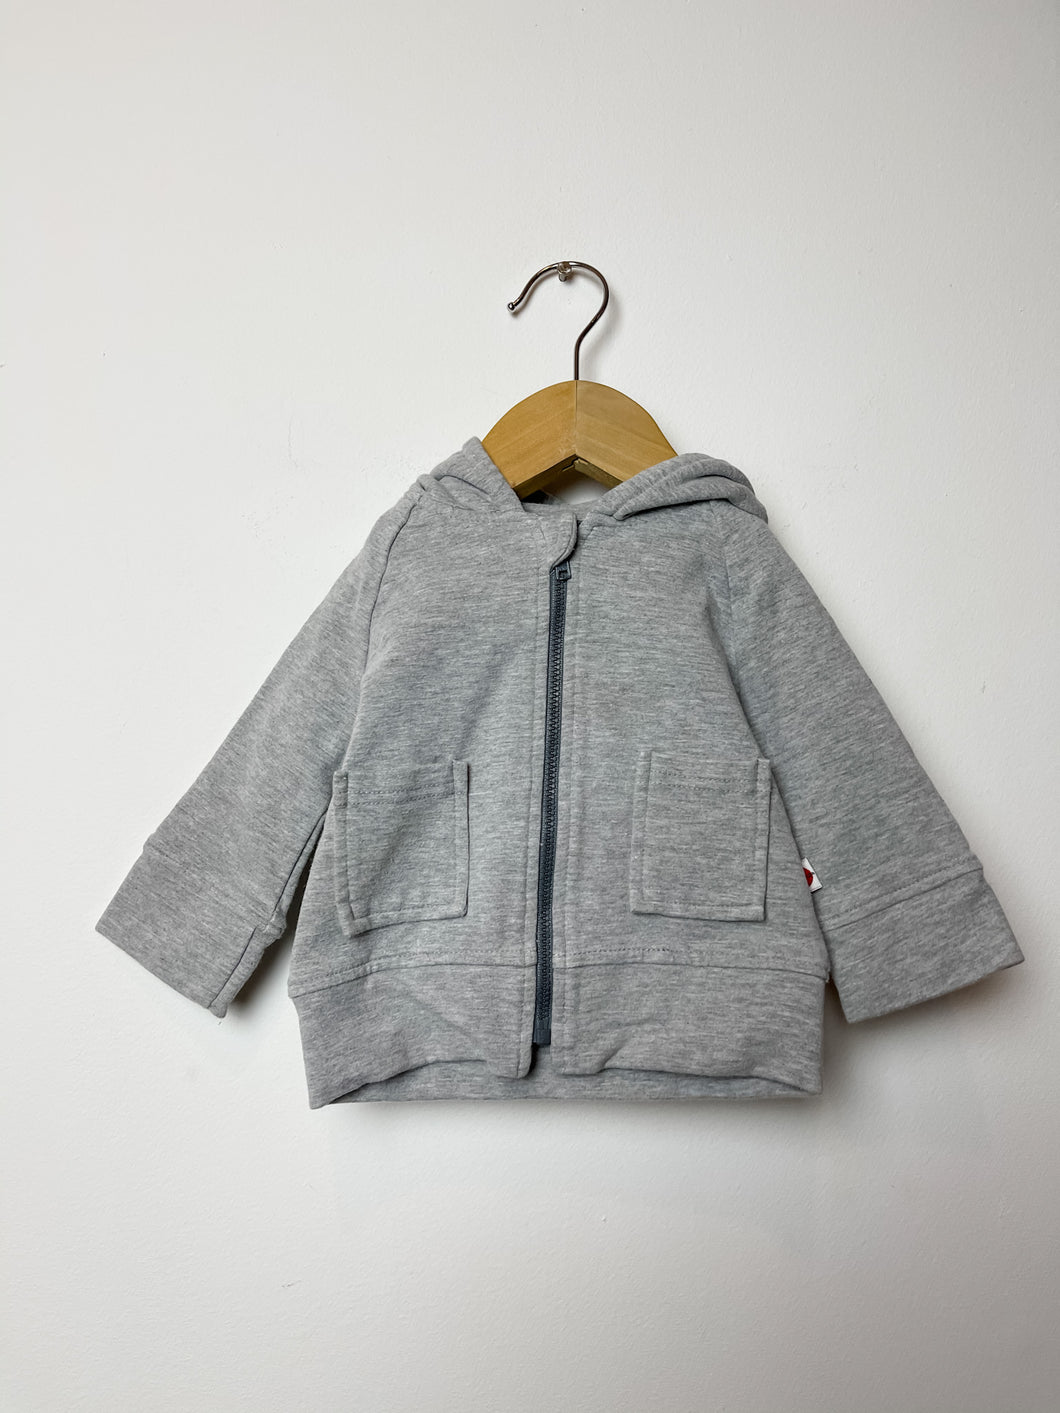 Grey Mochi Ga Ga Grey Sweater Size 6-12 Months